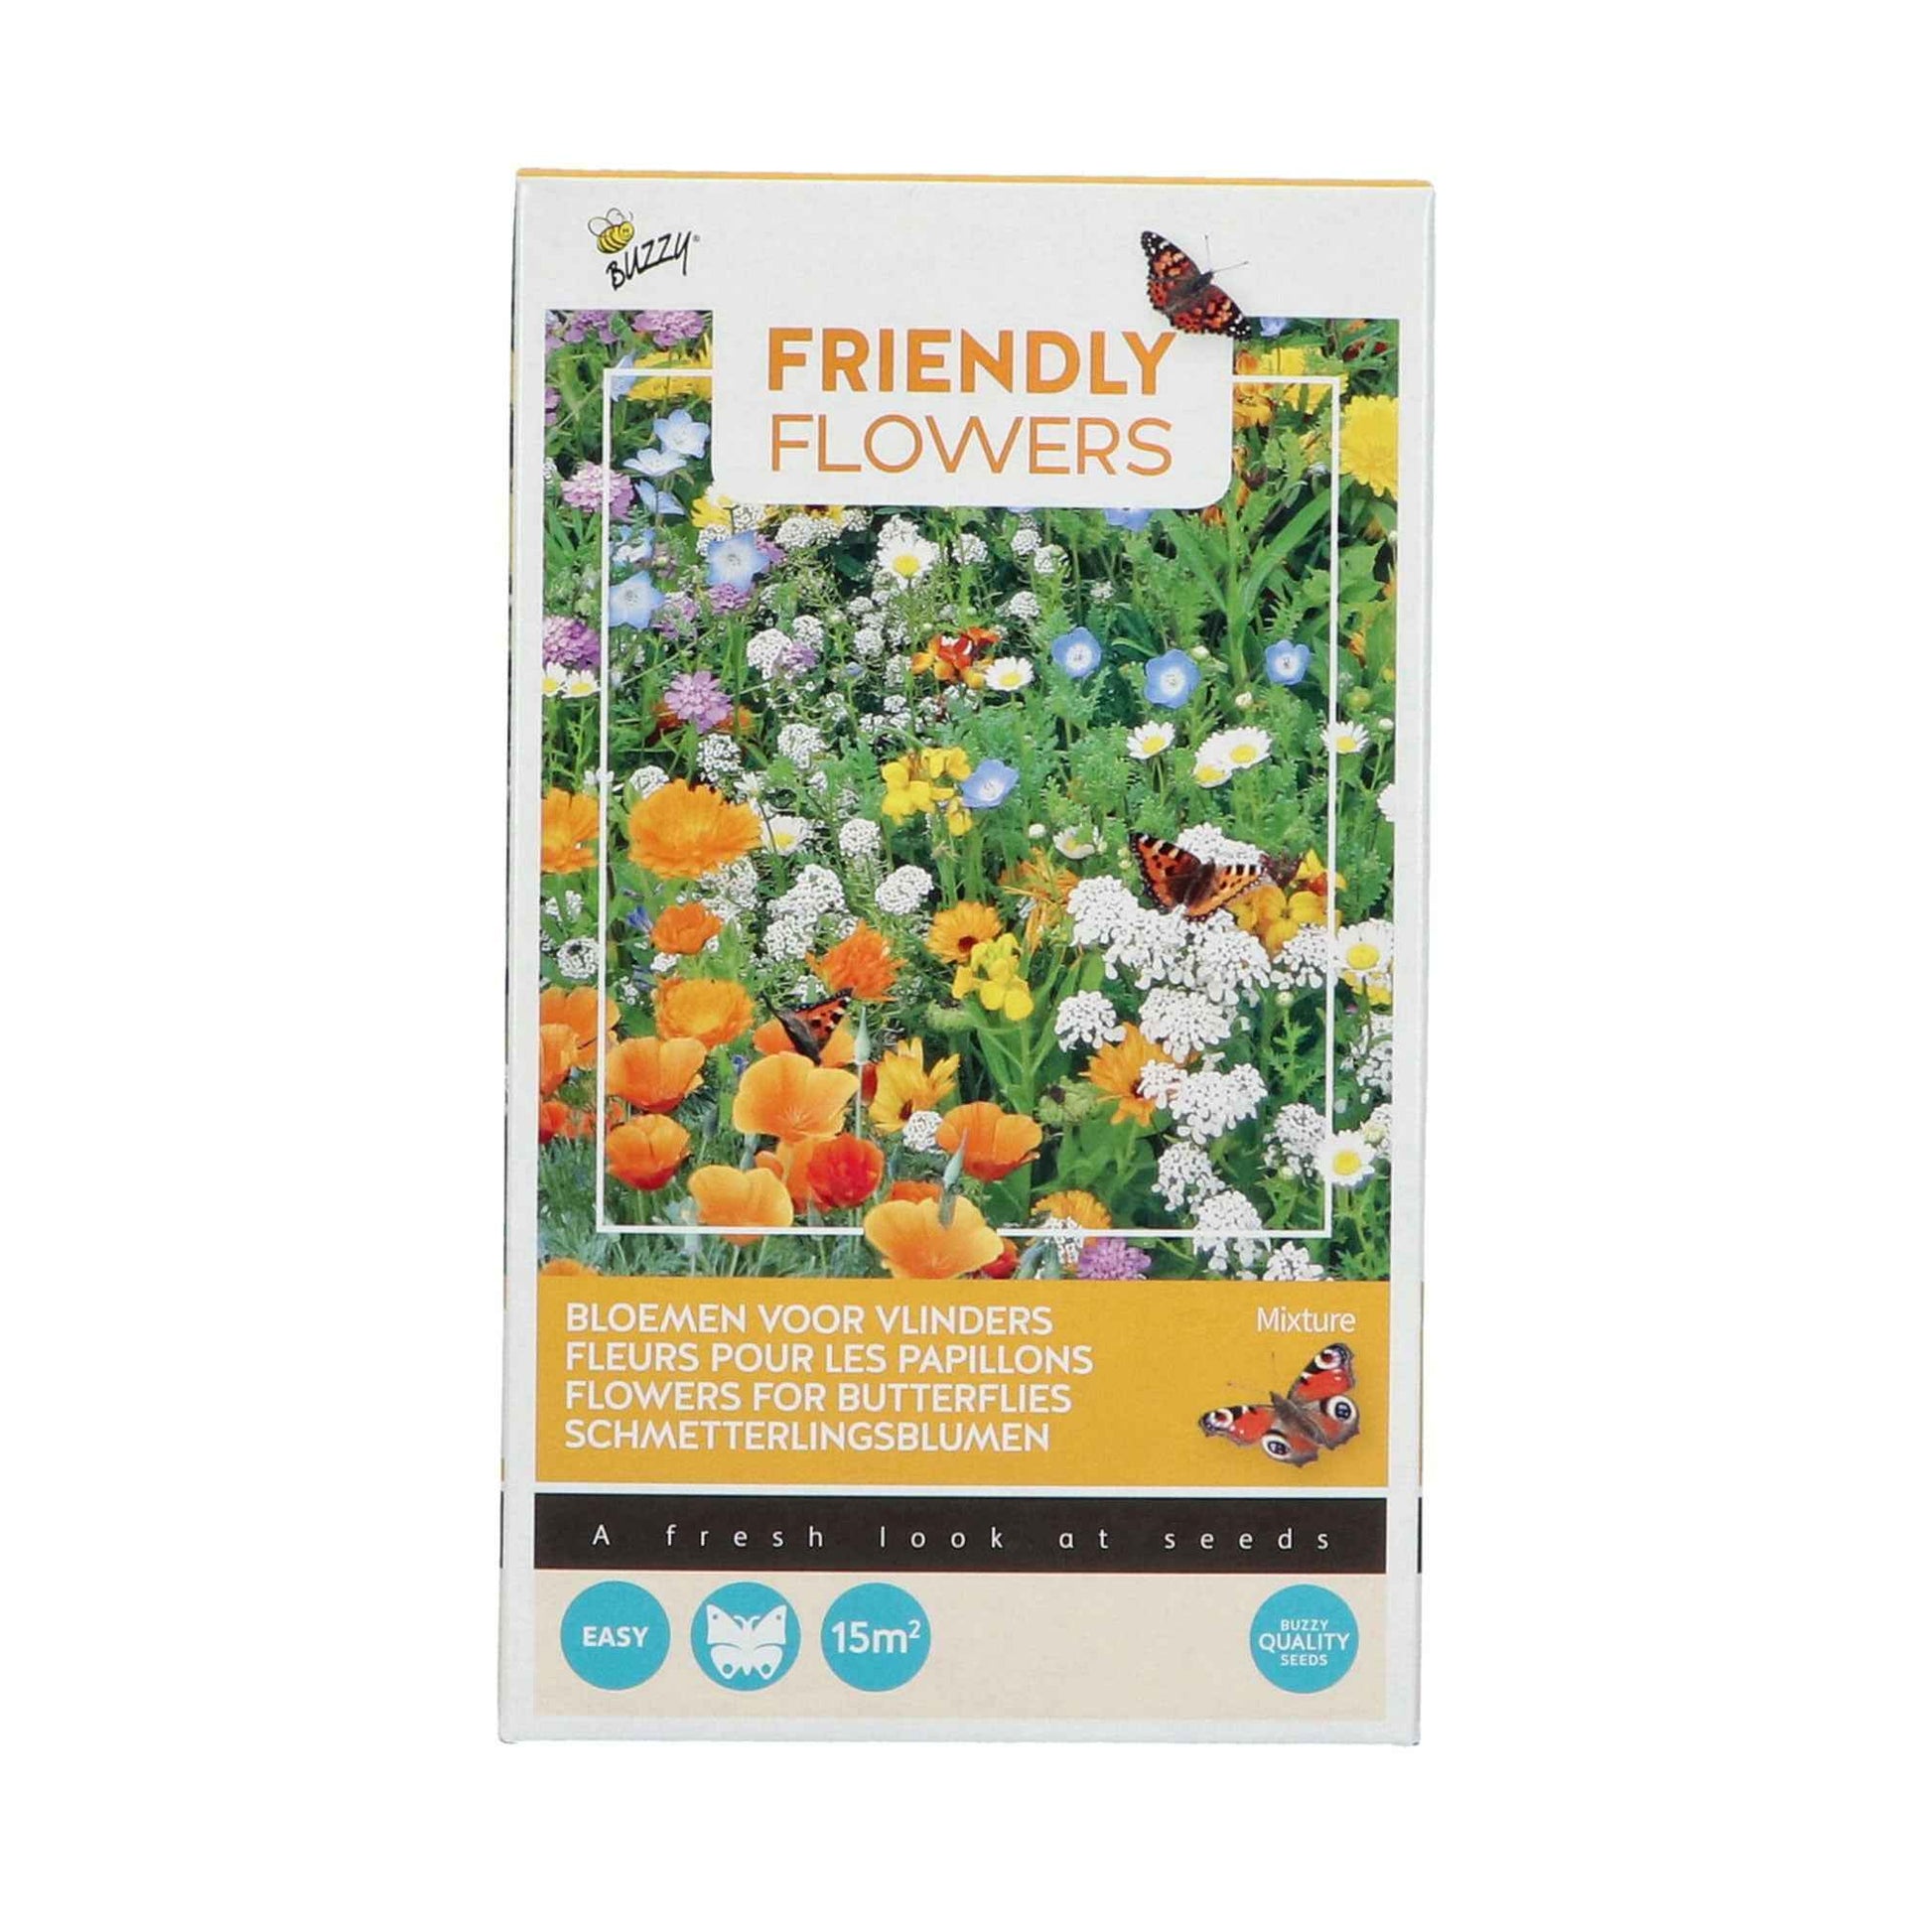 Vlinderlokkende bloemen - Friendly Flowers Mix incl. granulaat - Bloemzaden - Bijvriendelijk bloemenzaad